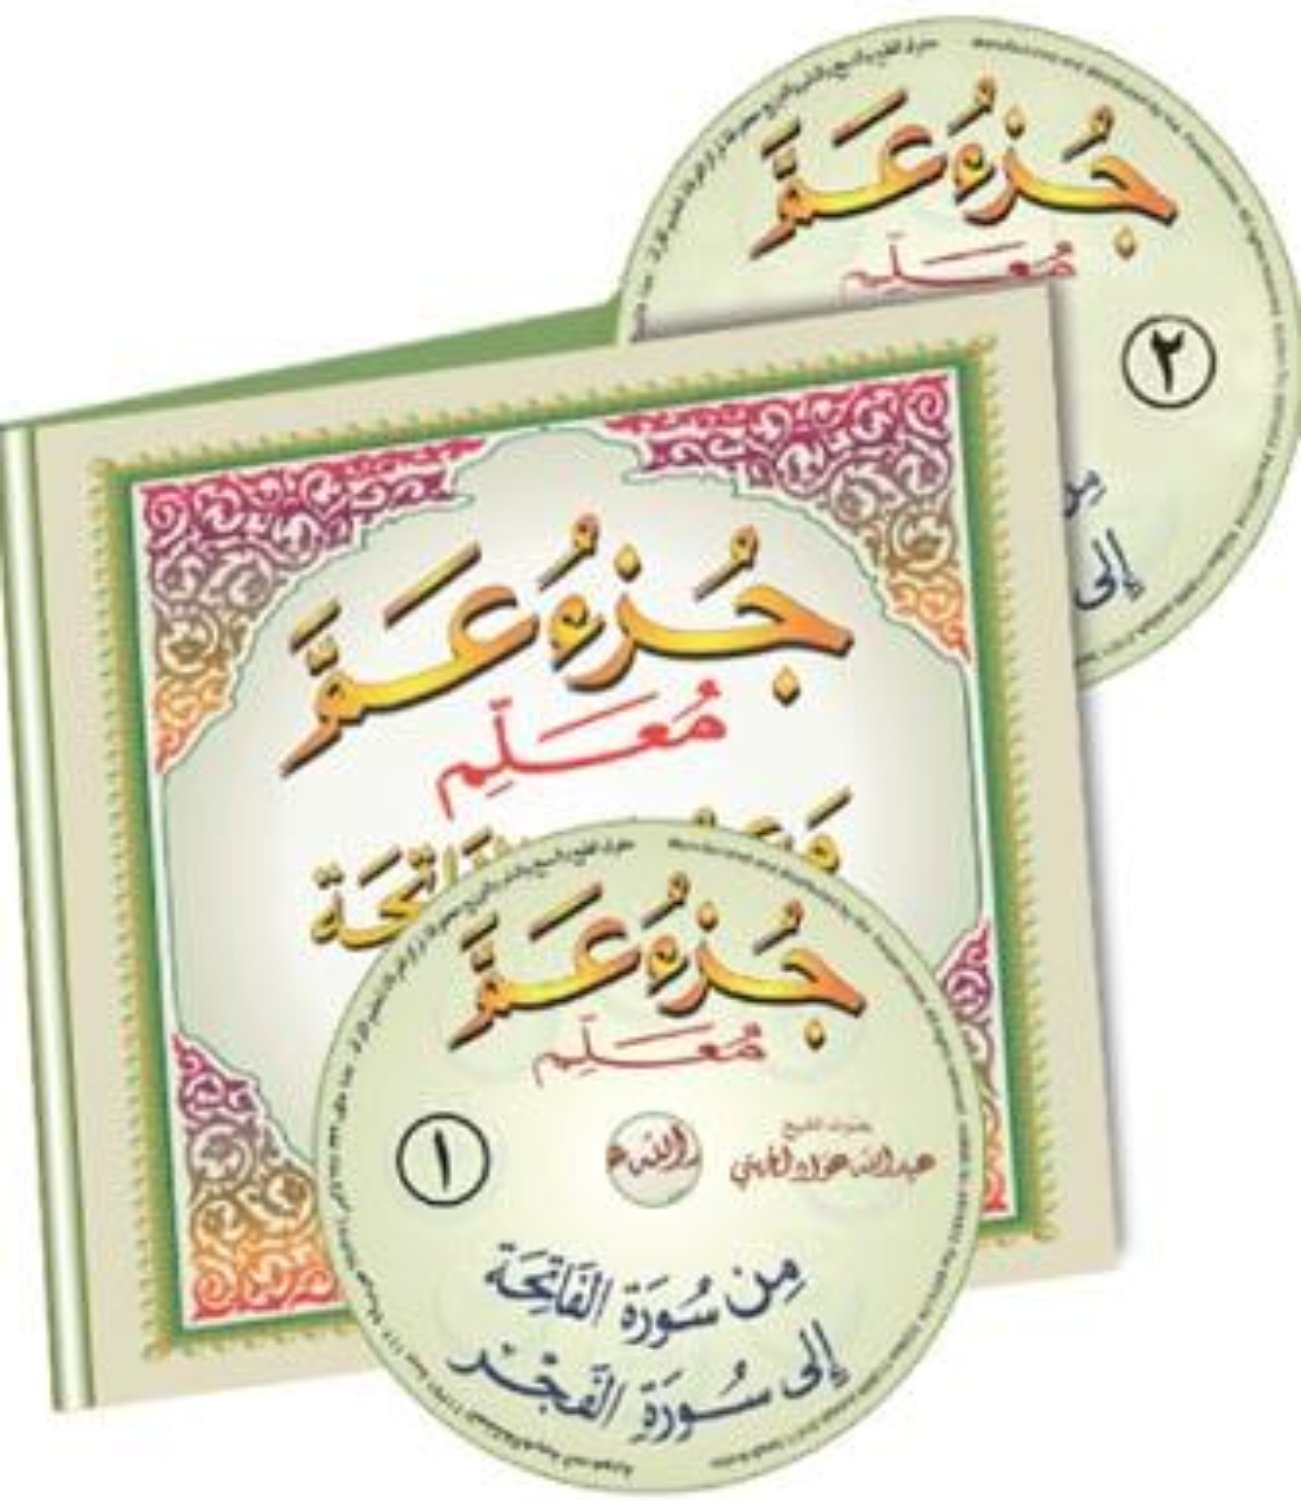 Al-Qaidah An-Noraniah – Juz’ Amma & Al Fatihaa (2 Audio CDs)